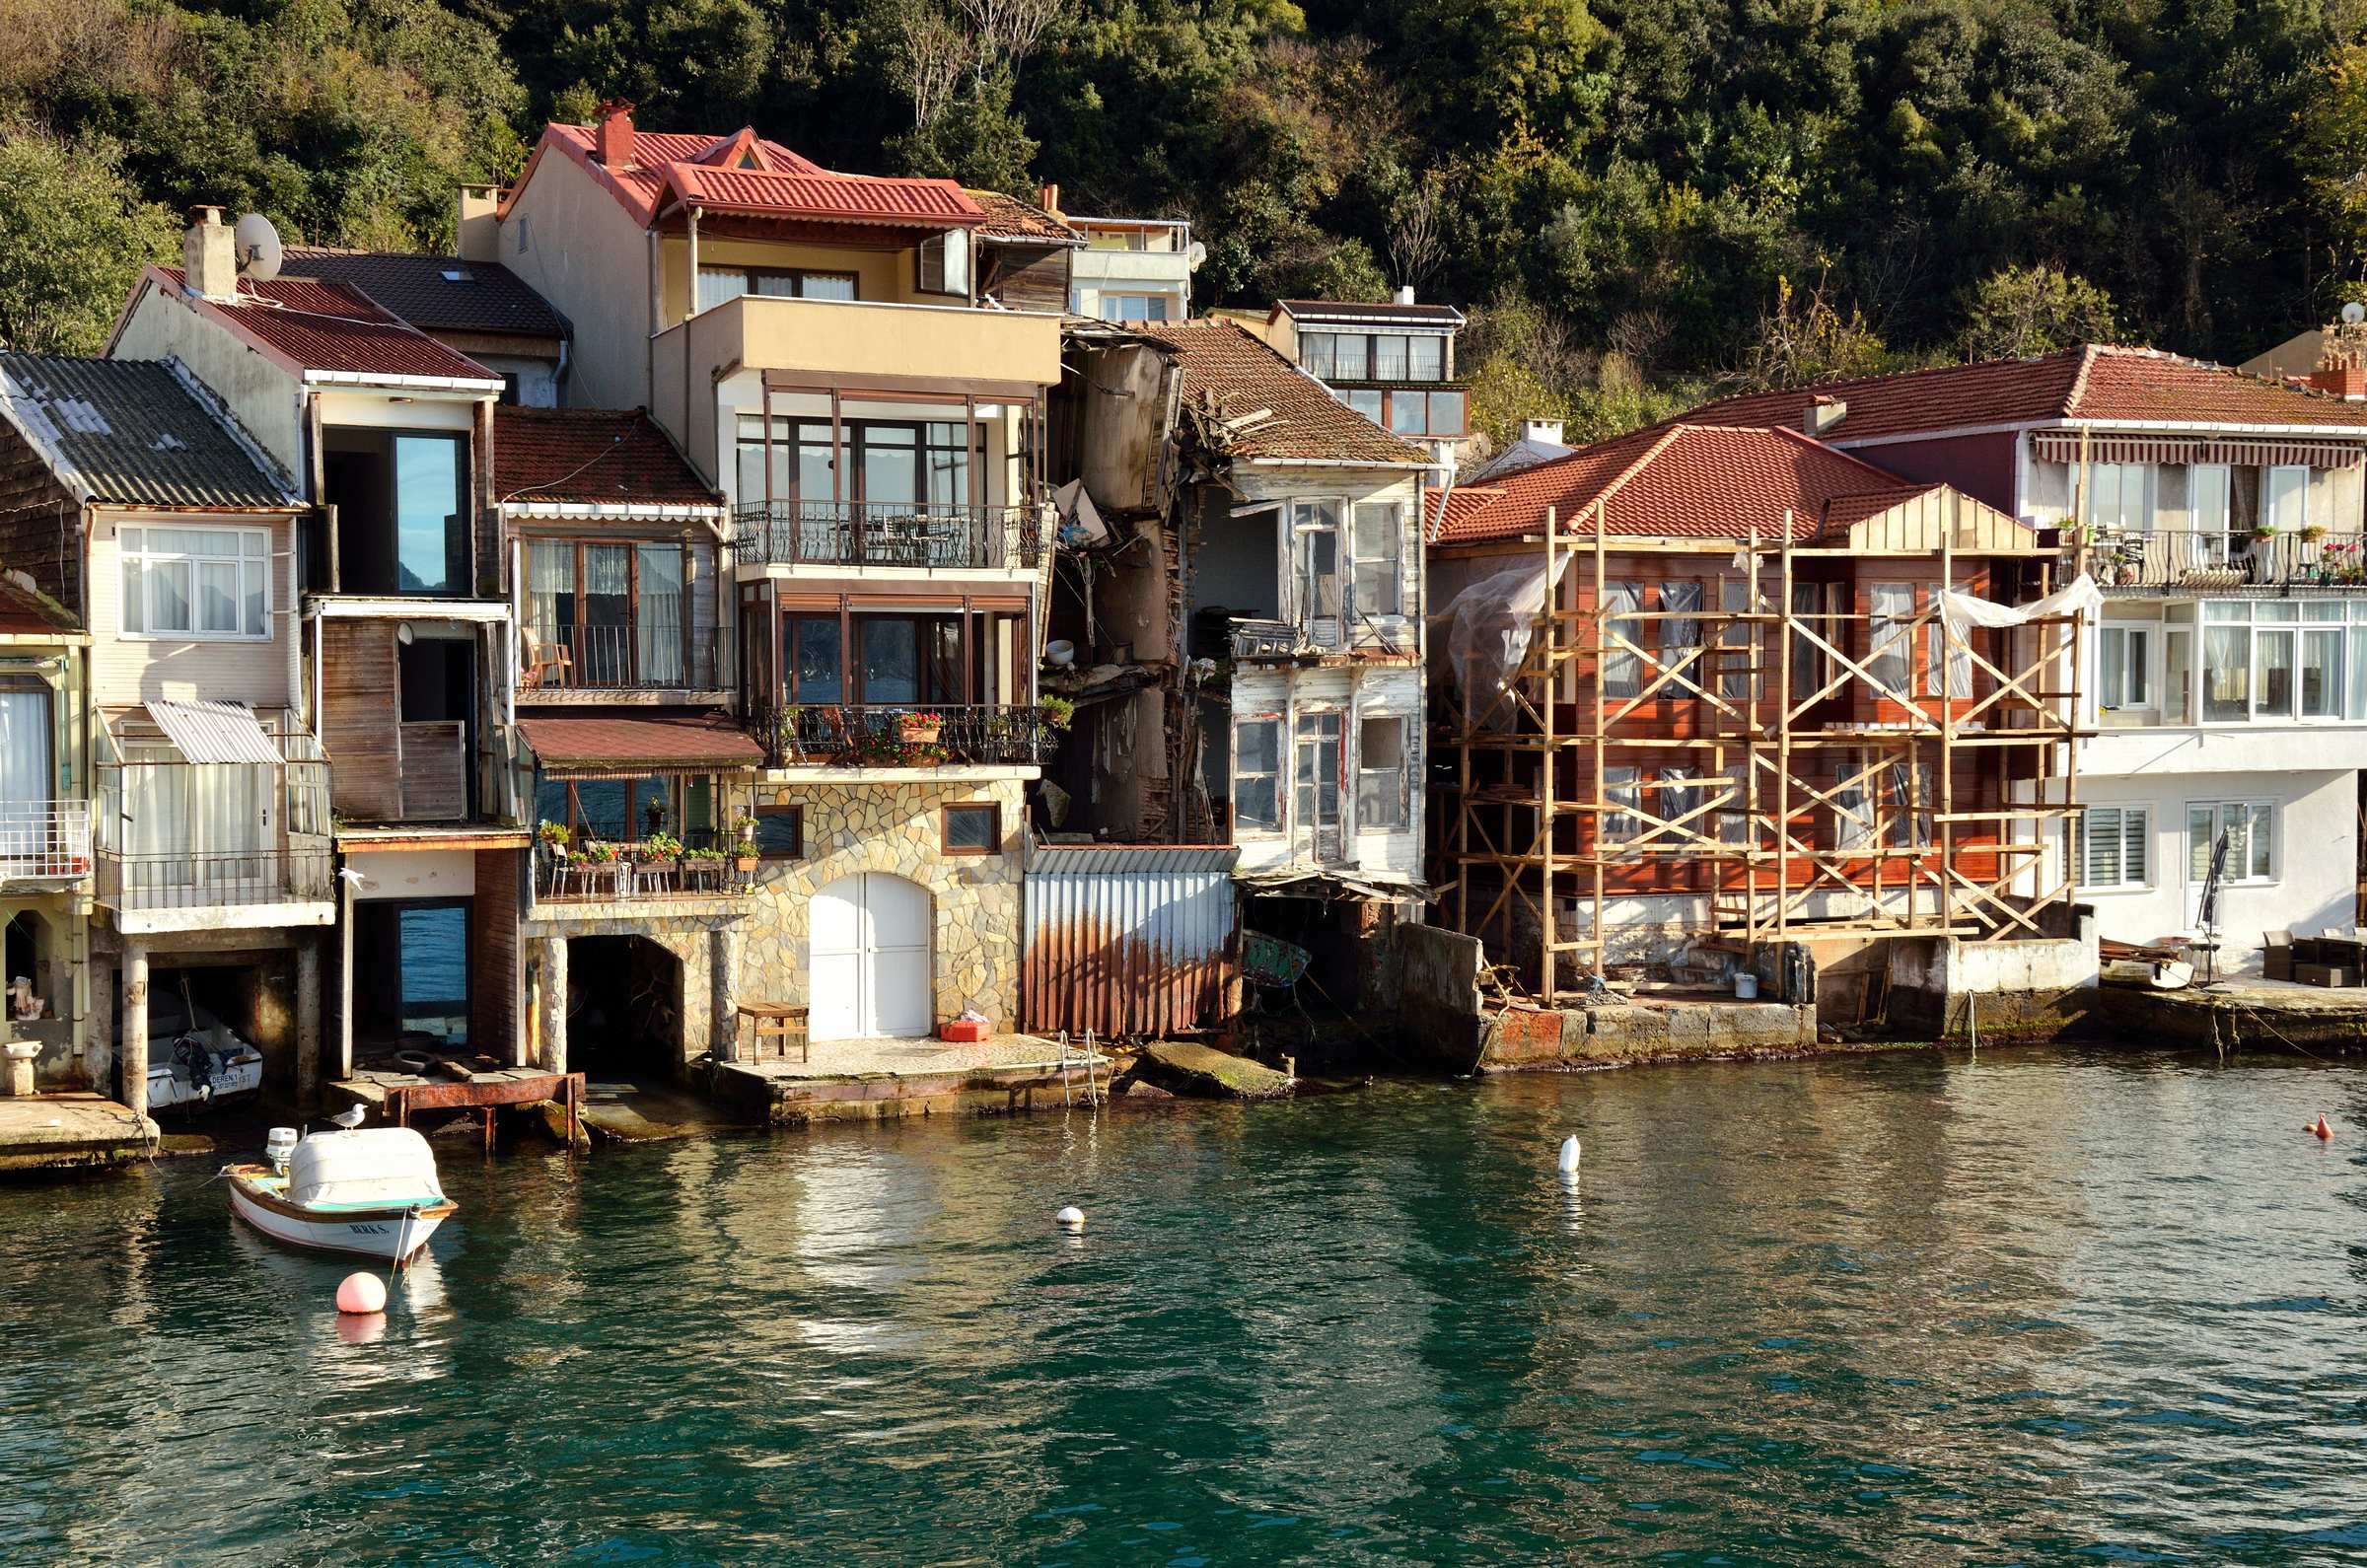 Ухоженные отремонтированные домики вплотную соседствуют с заброшенными развалюхами, Стамбул